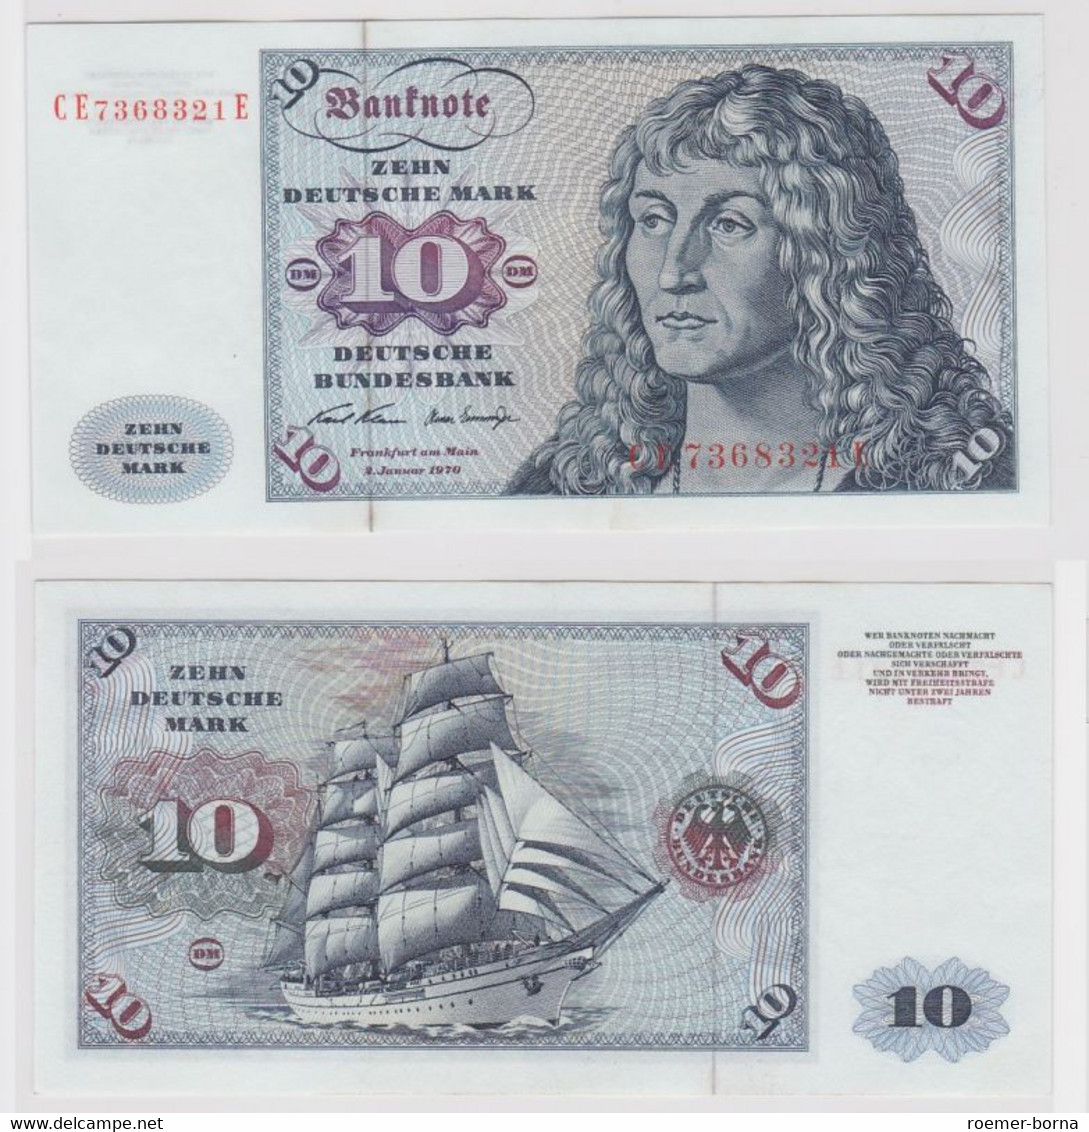 T146888 Banknote 10 DM Deutsche Mark Ro. 270b Schein 2.Jan. 1970 KN CE 7368321 E - 10 Deutsche Mark